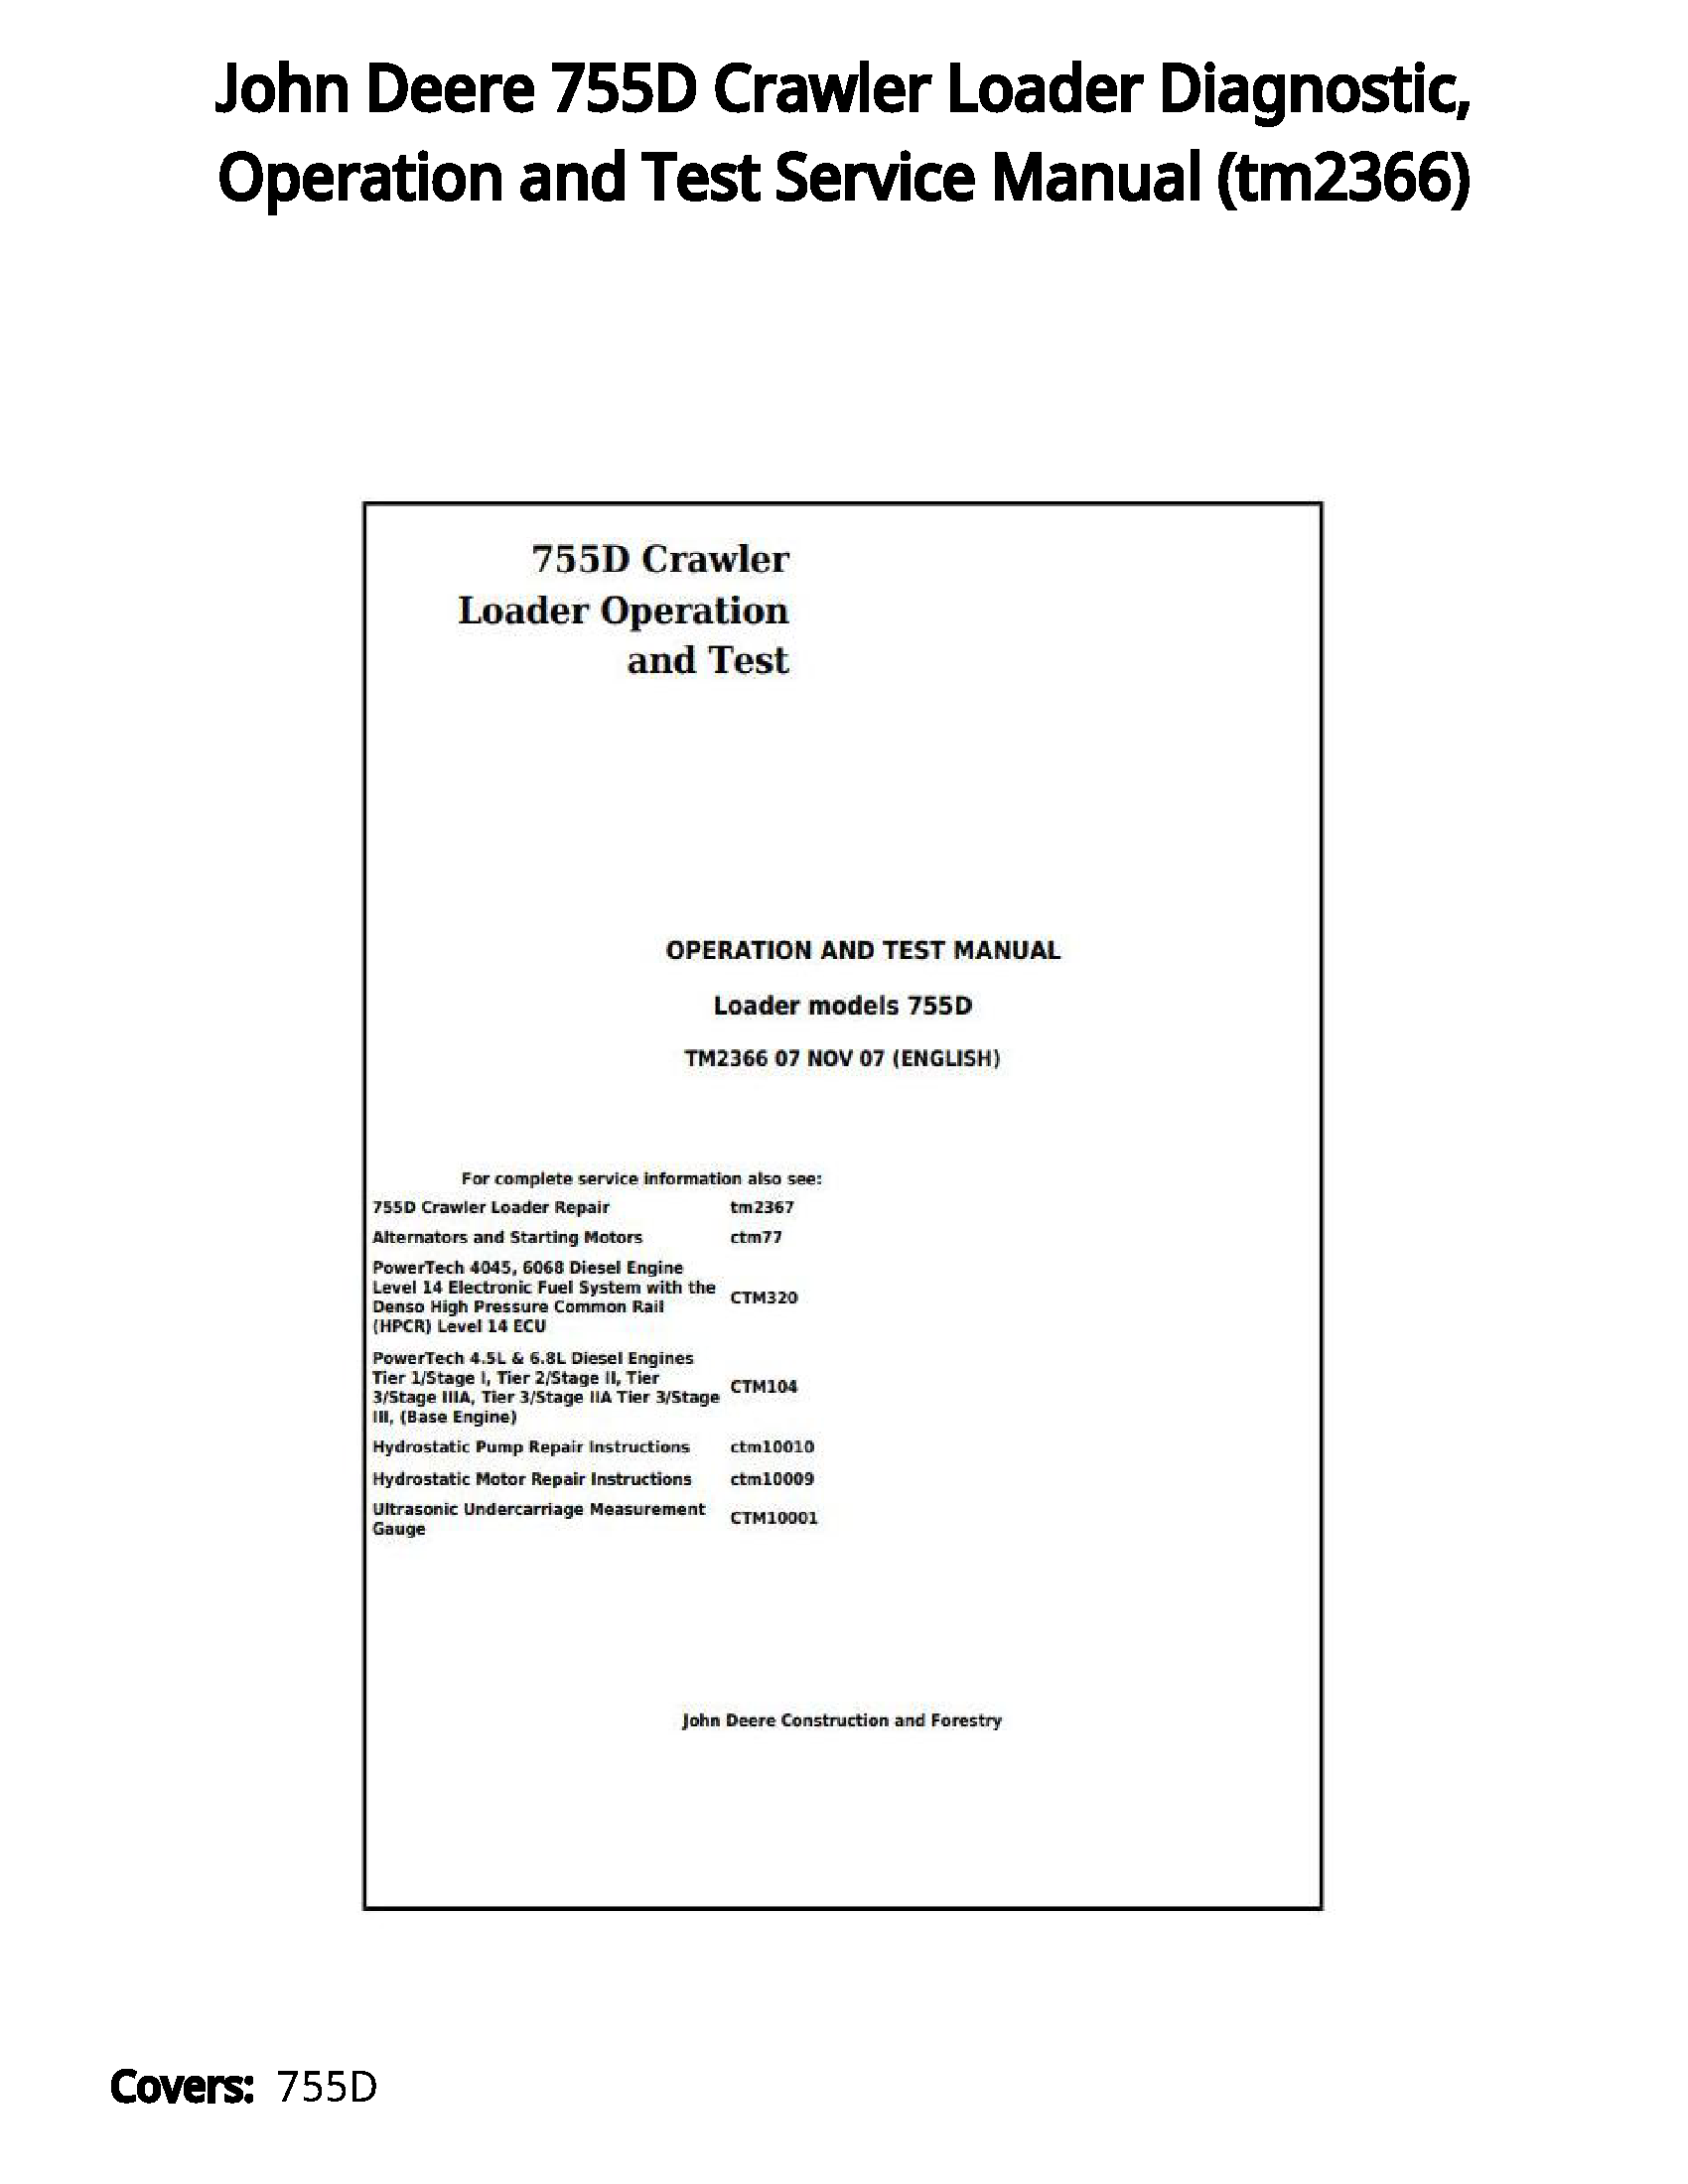 John Deere 755D Crawler Loader Diagnostic  Operation and Test Service Manual - tm2366